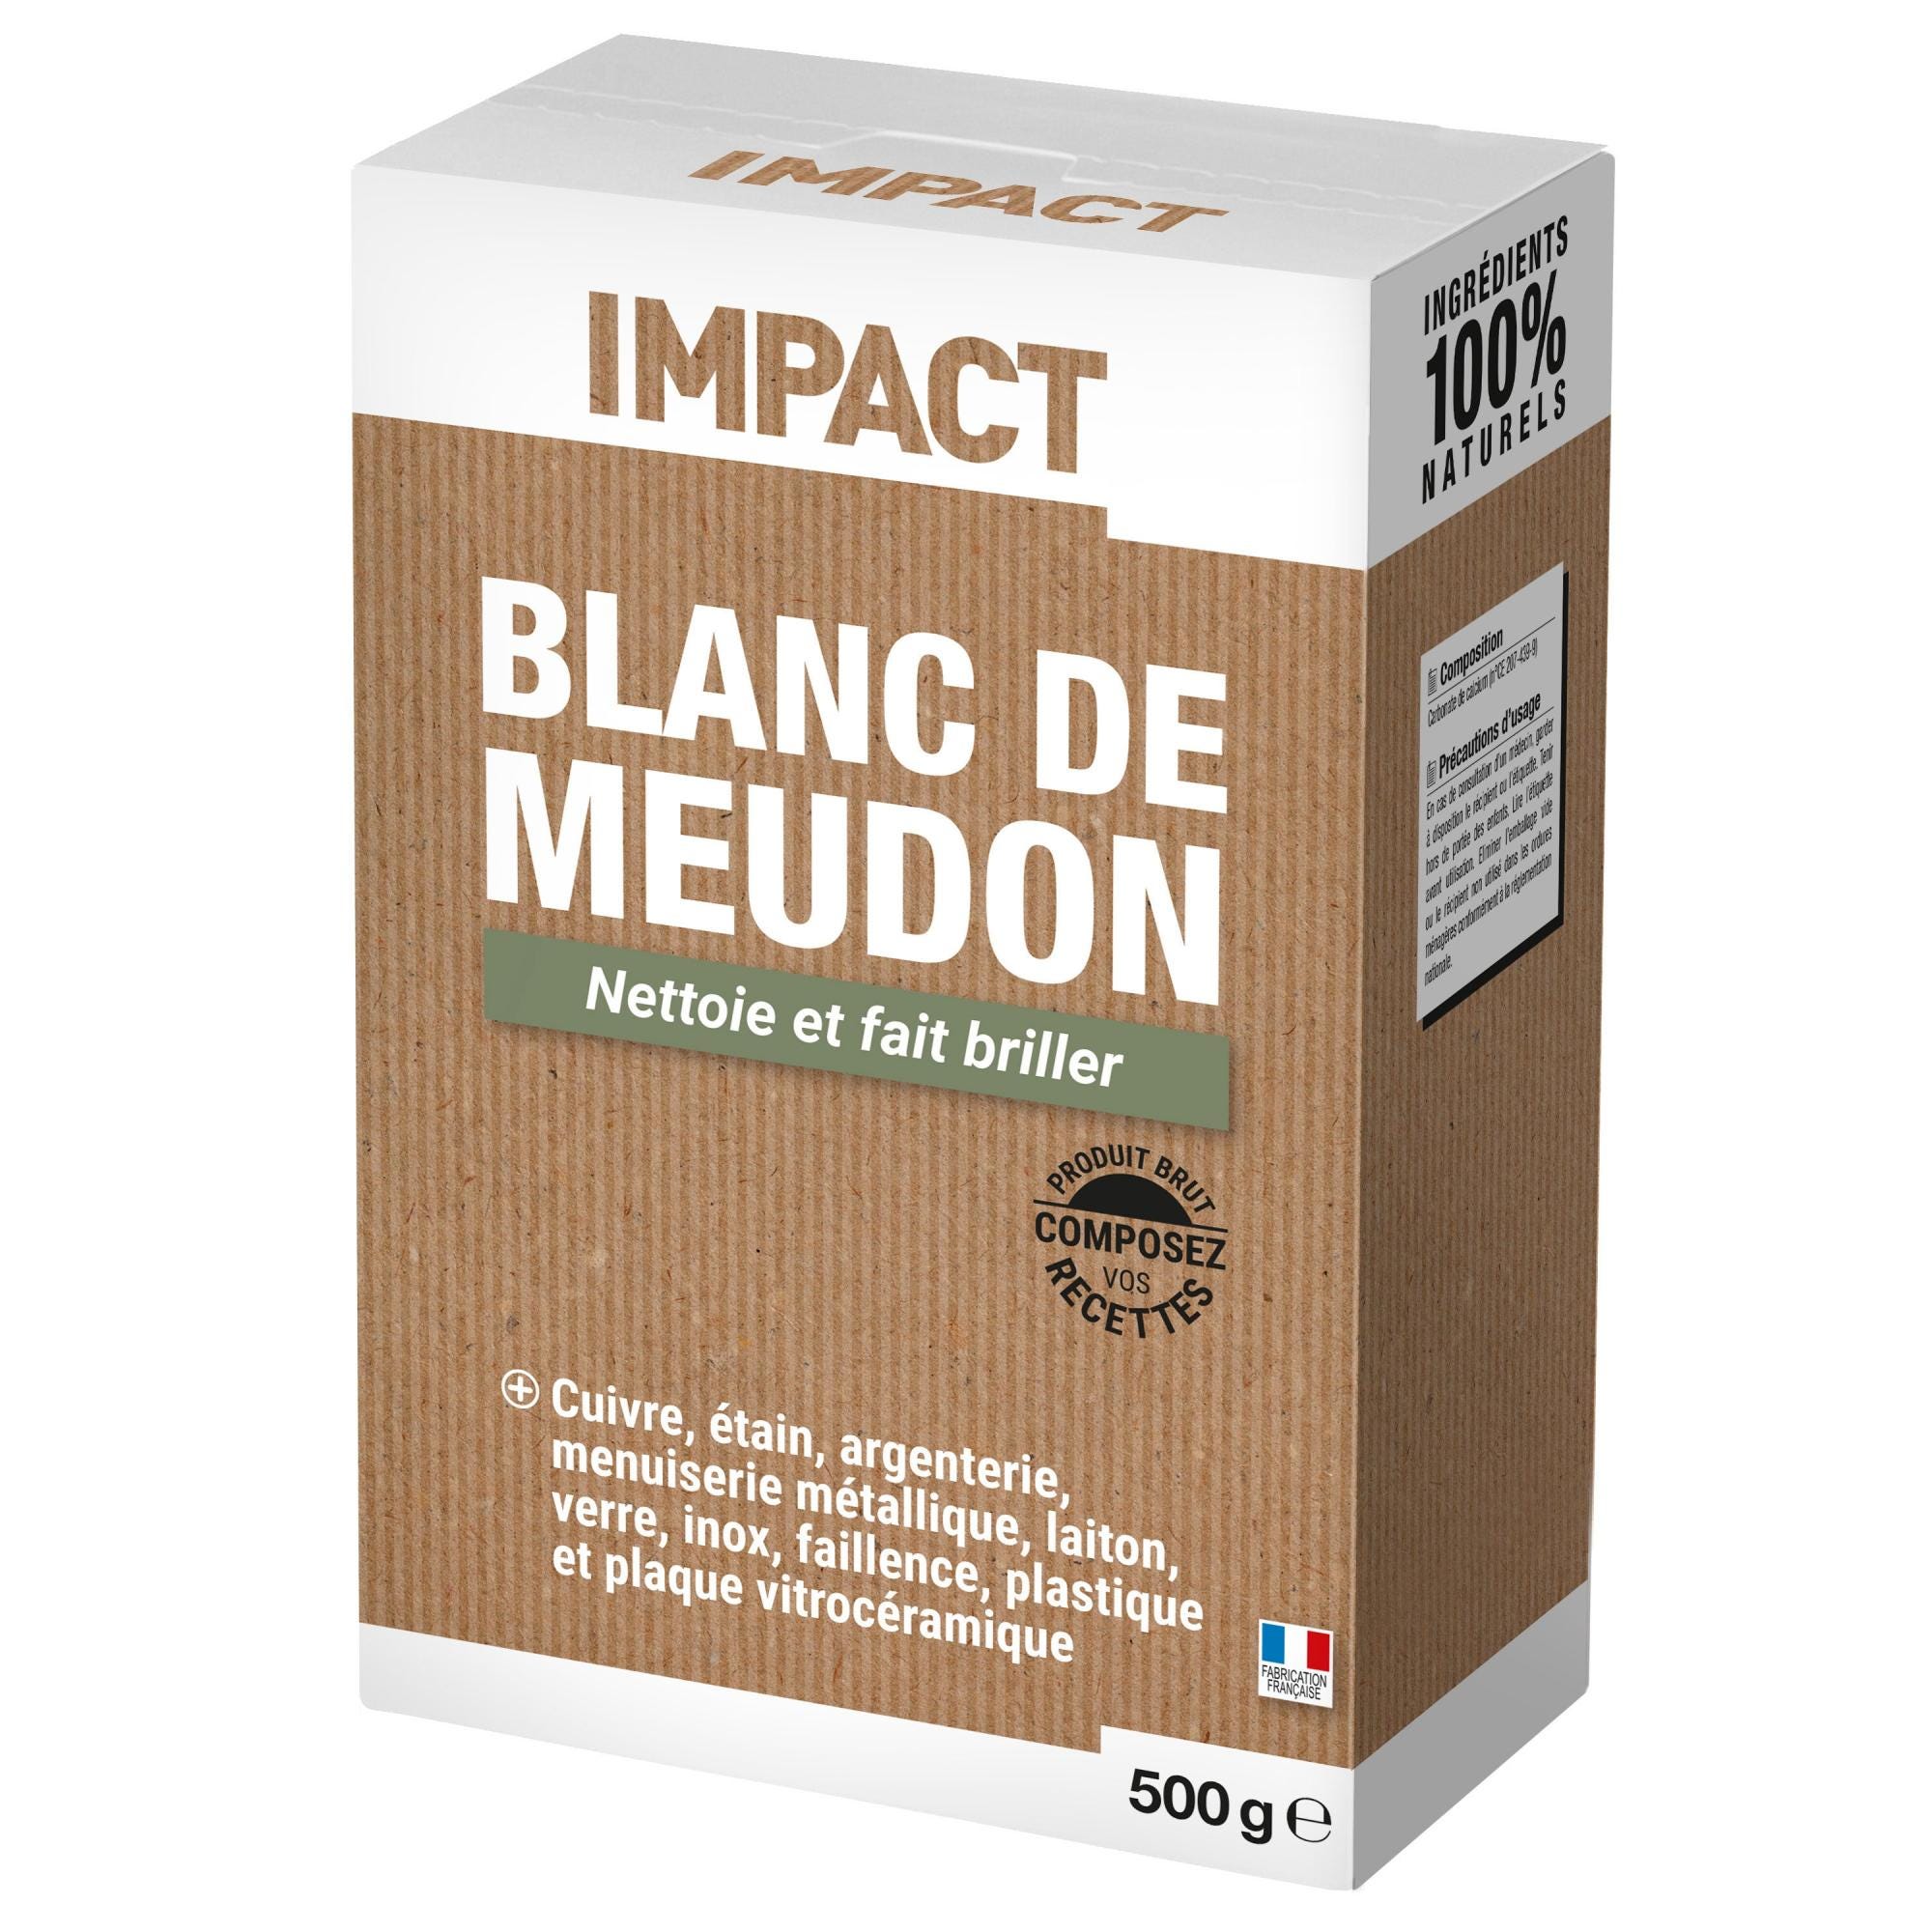 Blanc de Meudon poudre multisurface IMPACT 500G